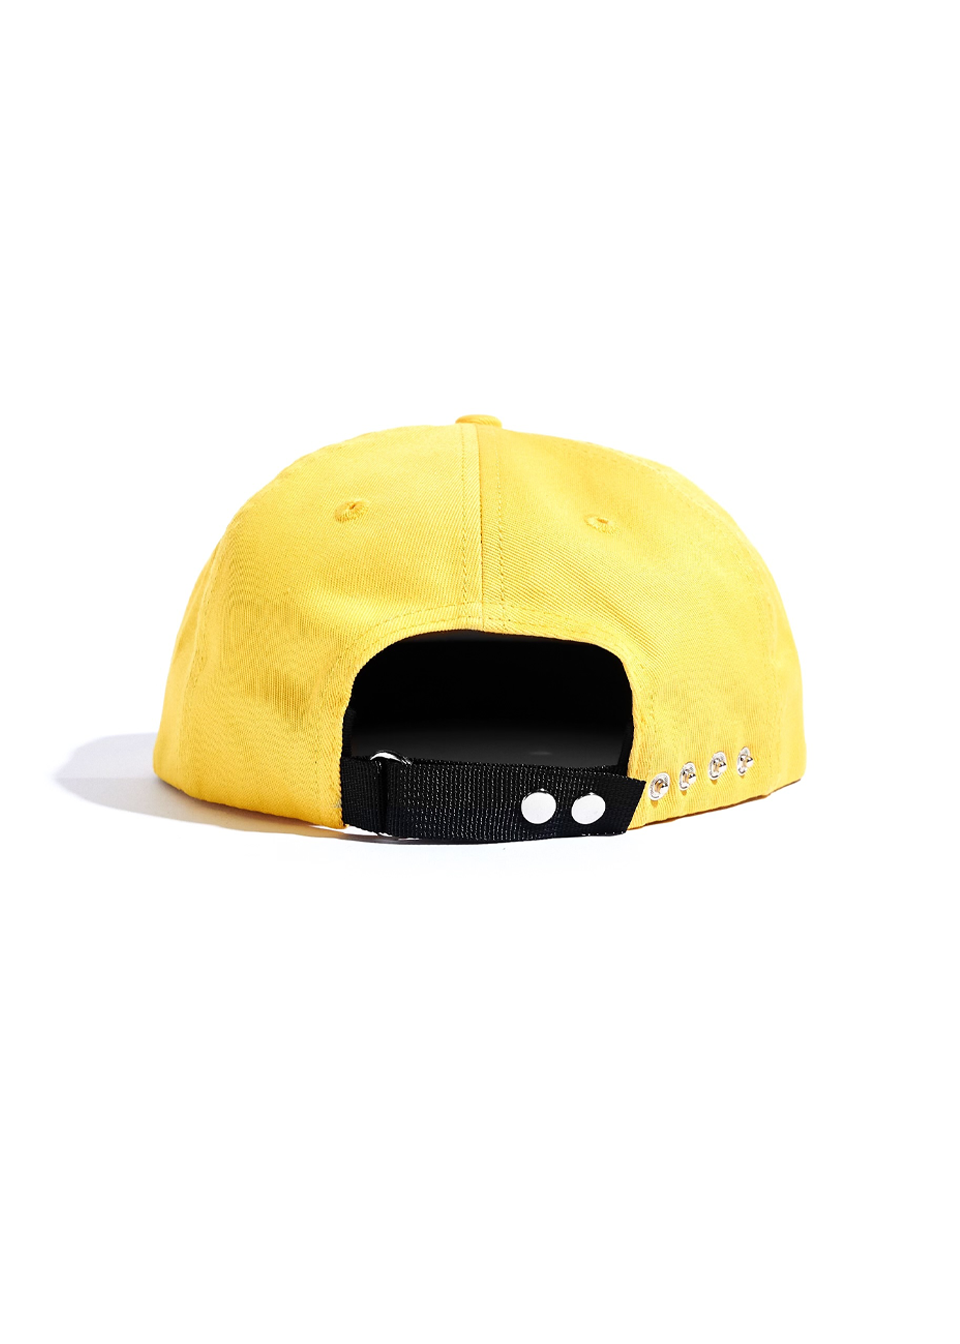 Auto Hat - Yellow